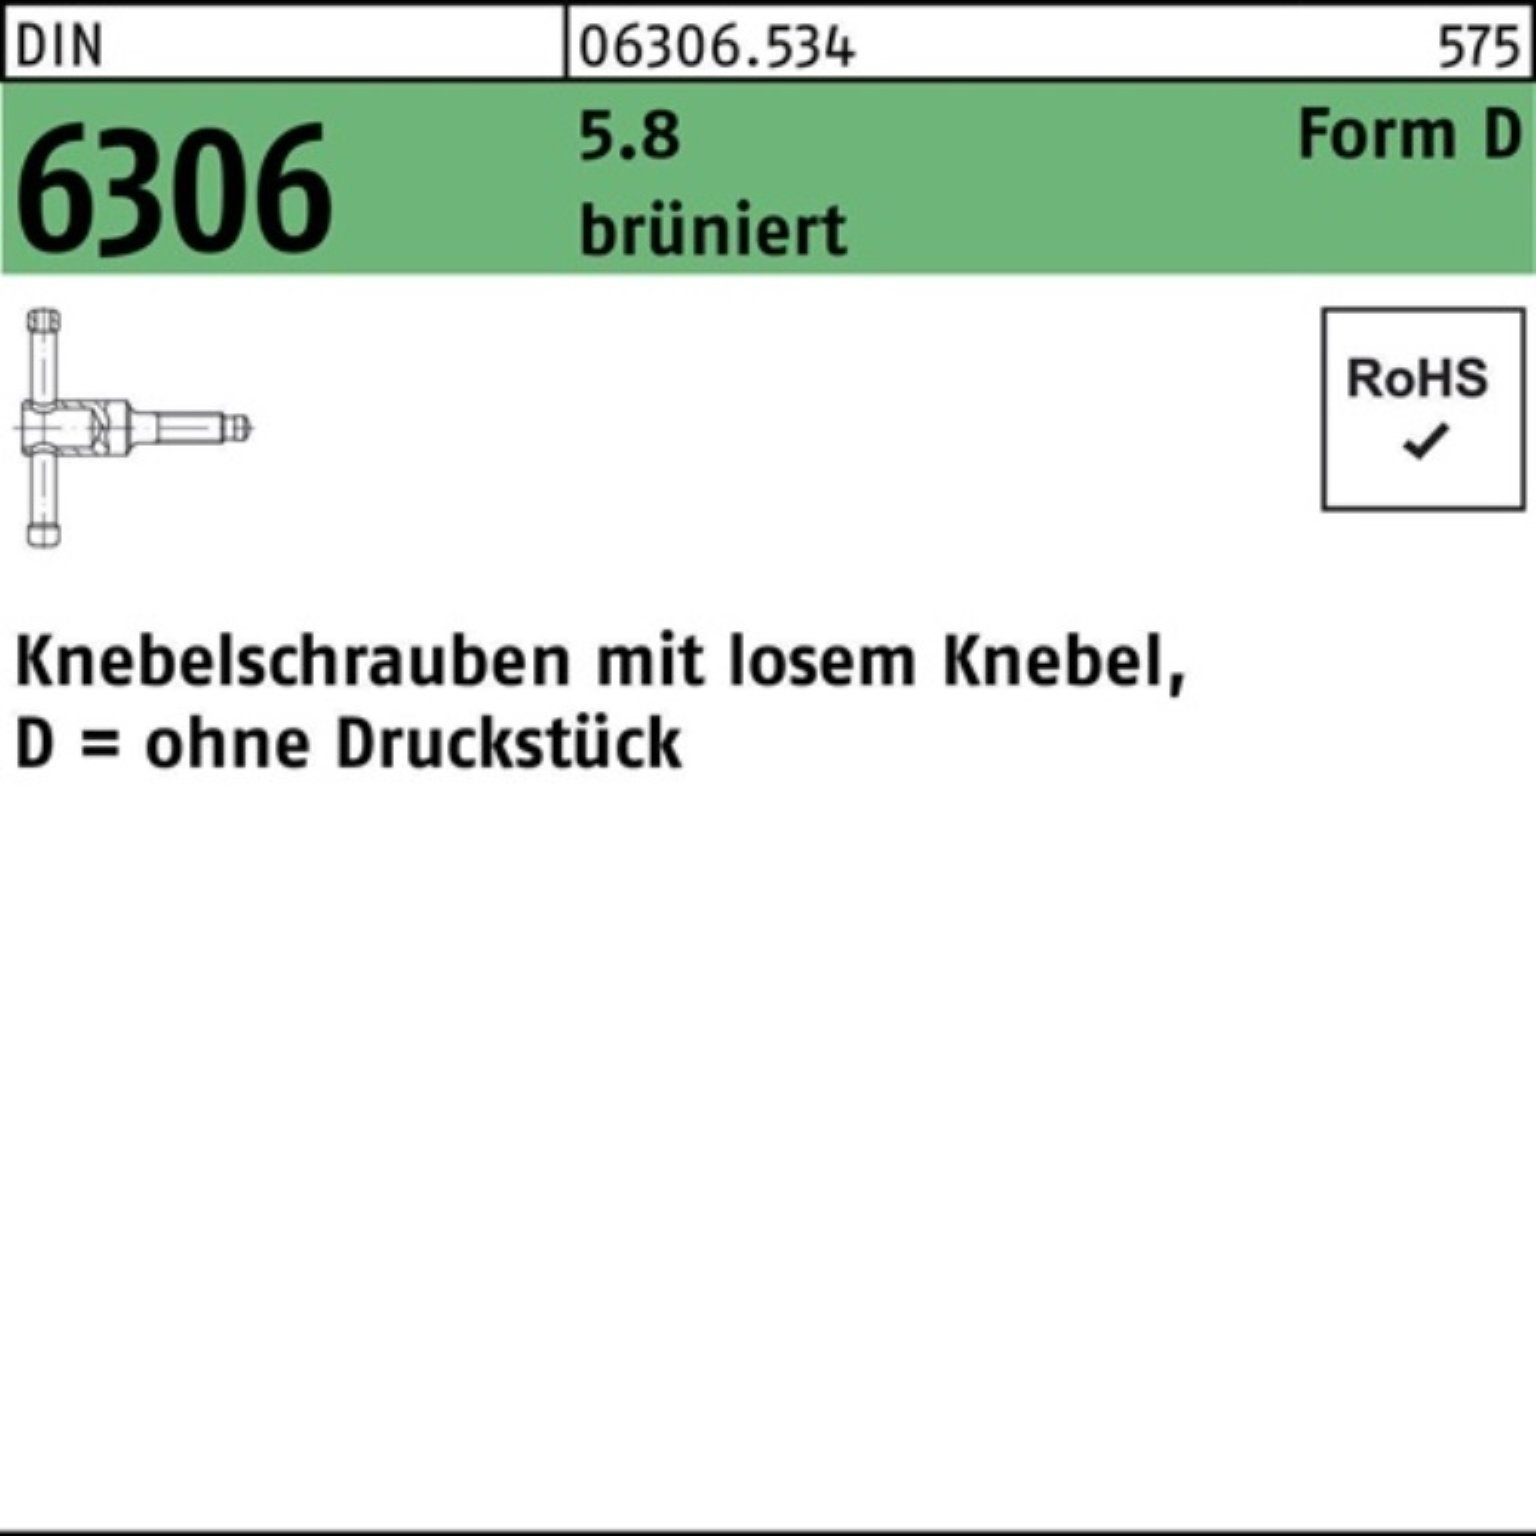 Reyher Schraube 100er Pack Knebelschraube DIN 6306 losen Knebel DM 12x 50 5.8 brünier